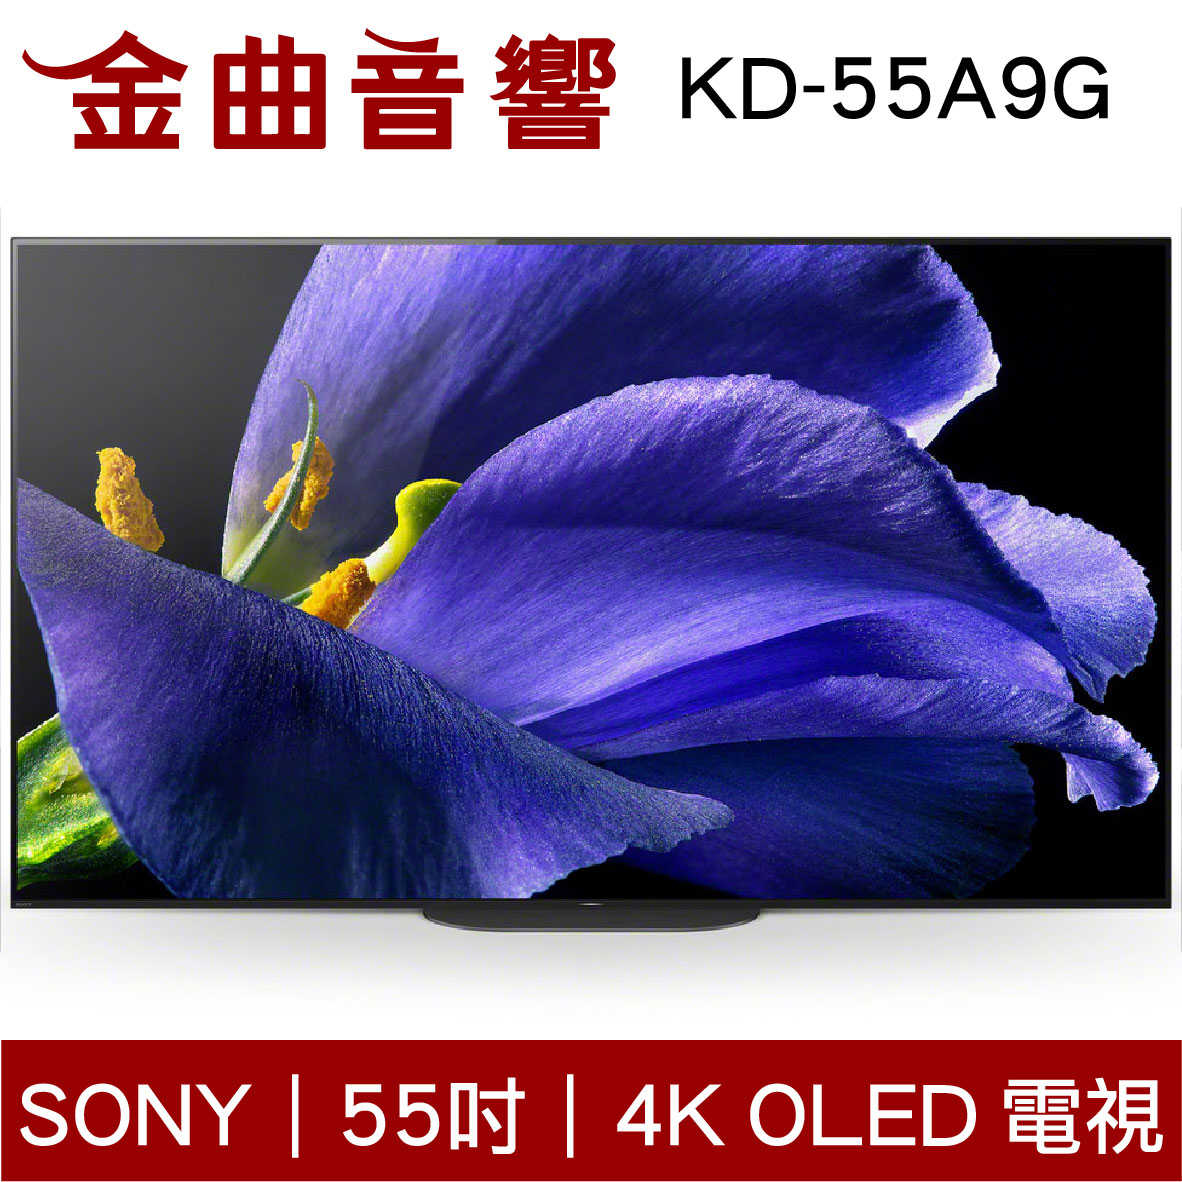 SONY 55吋 KD-55A9G 4K高畫質數位 OLED電視 | 金曲音響